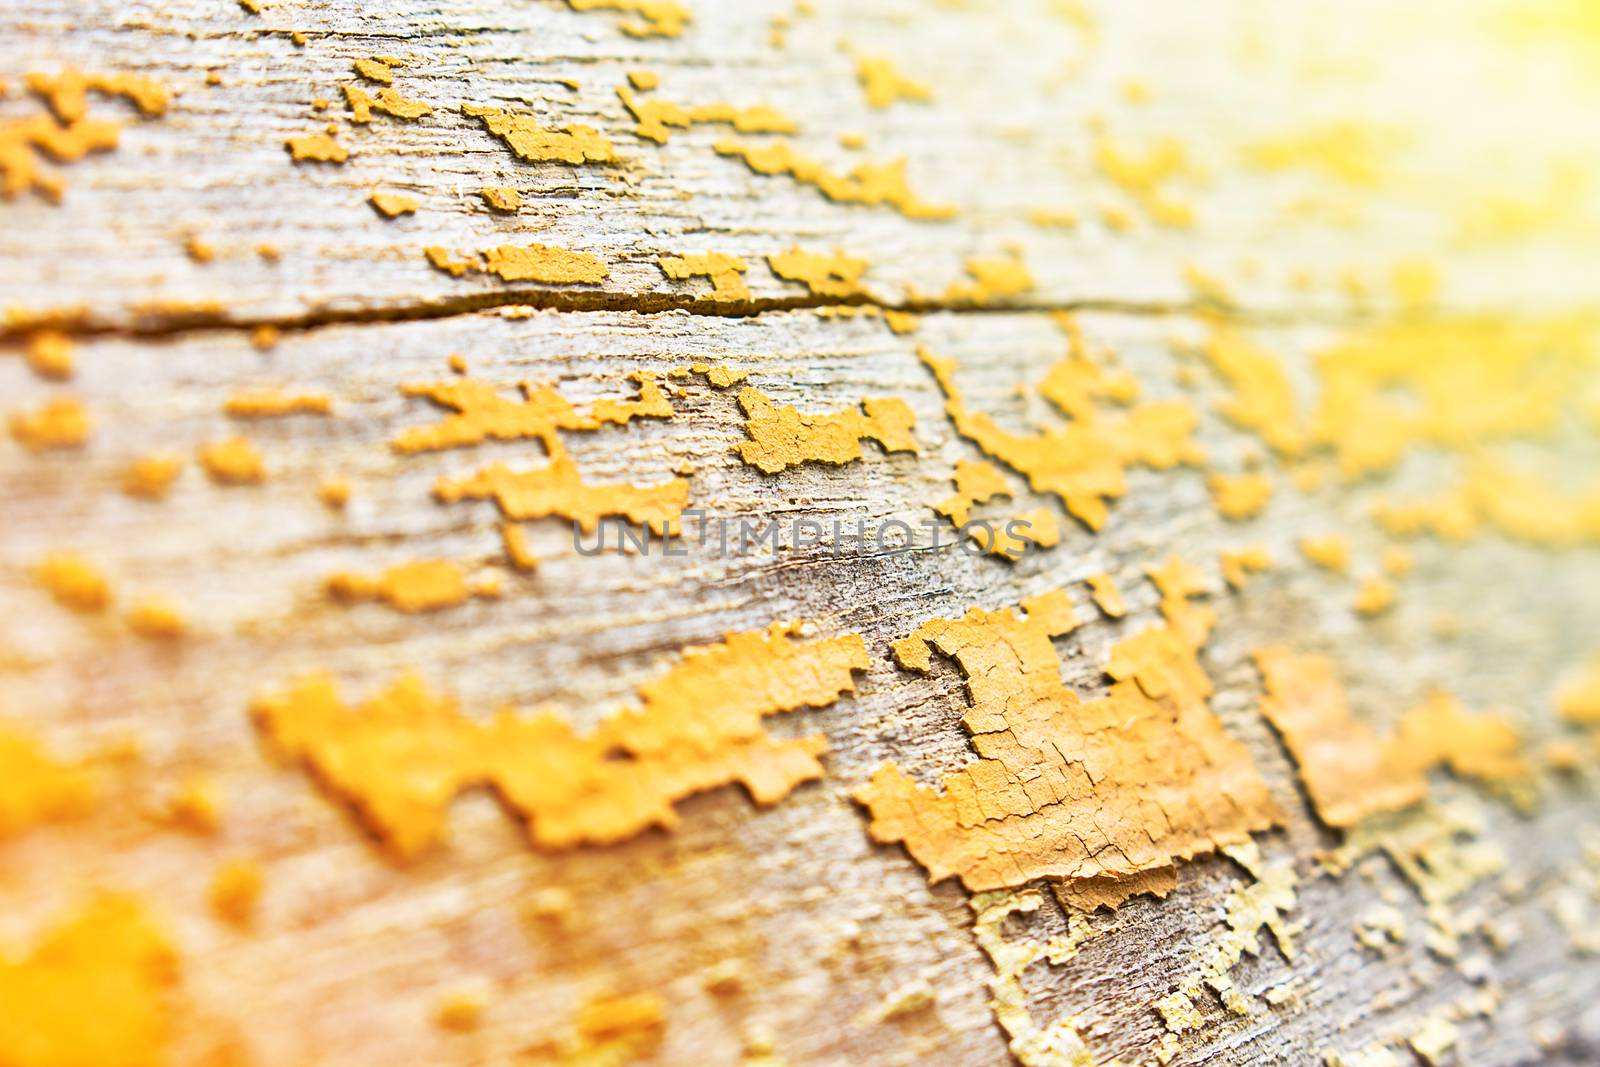 wood texture by narinbg